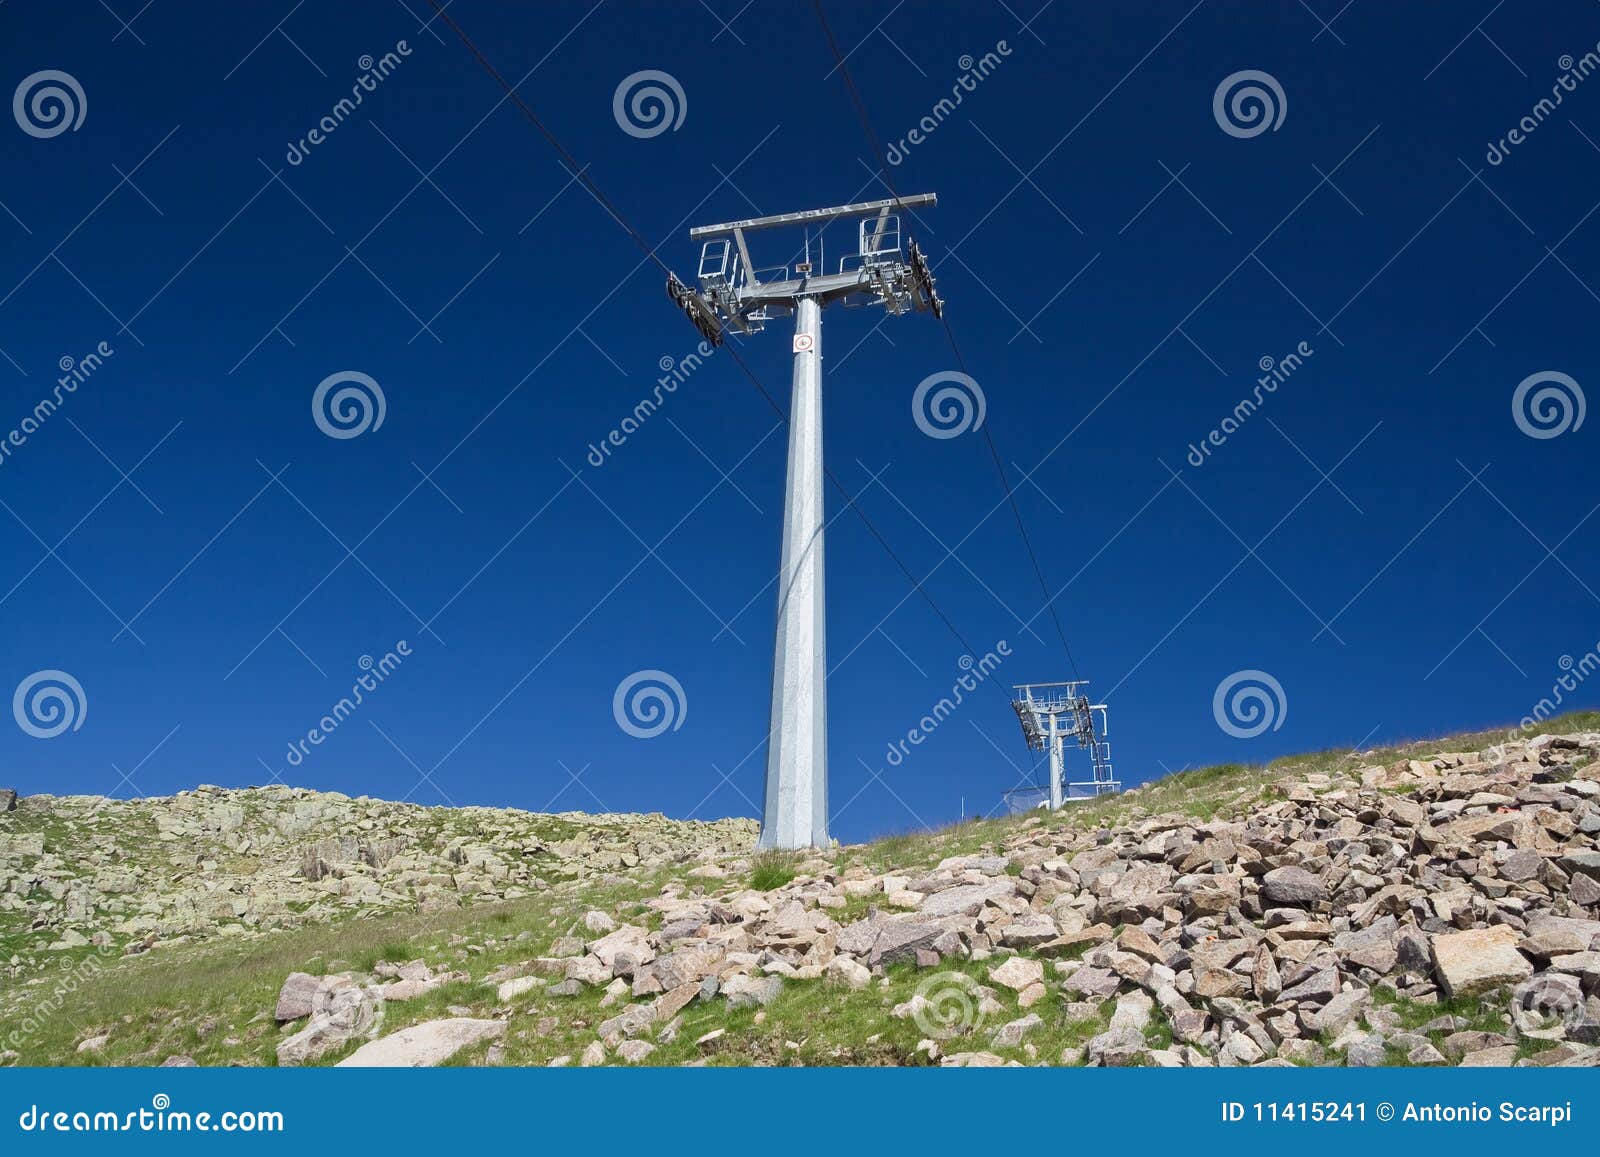 ski lift pylon